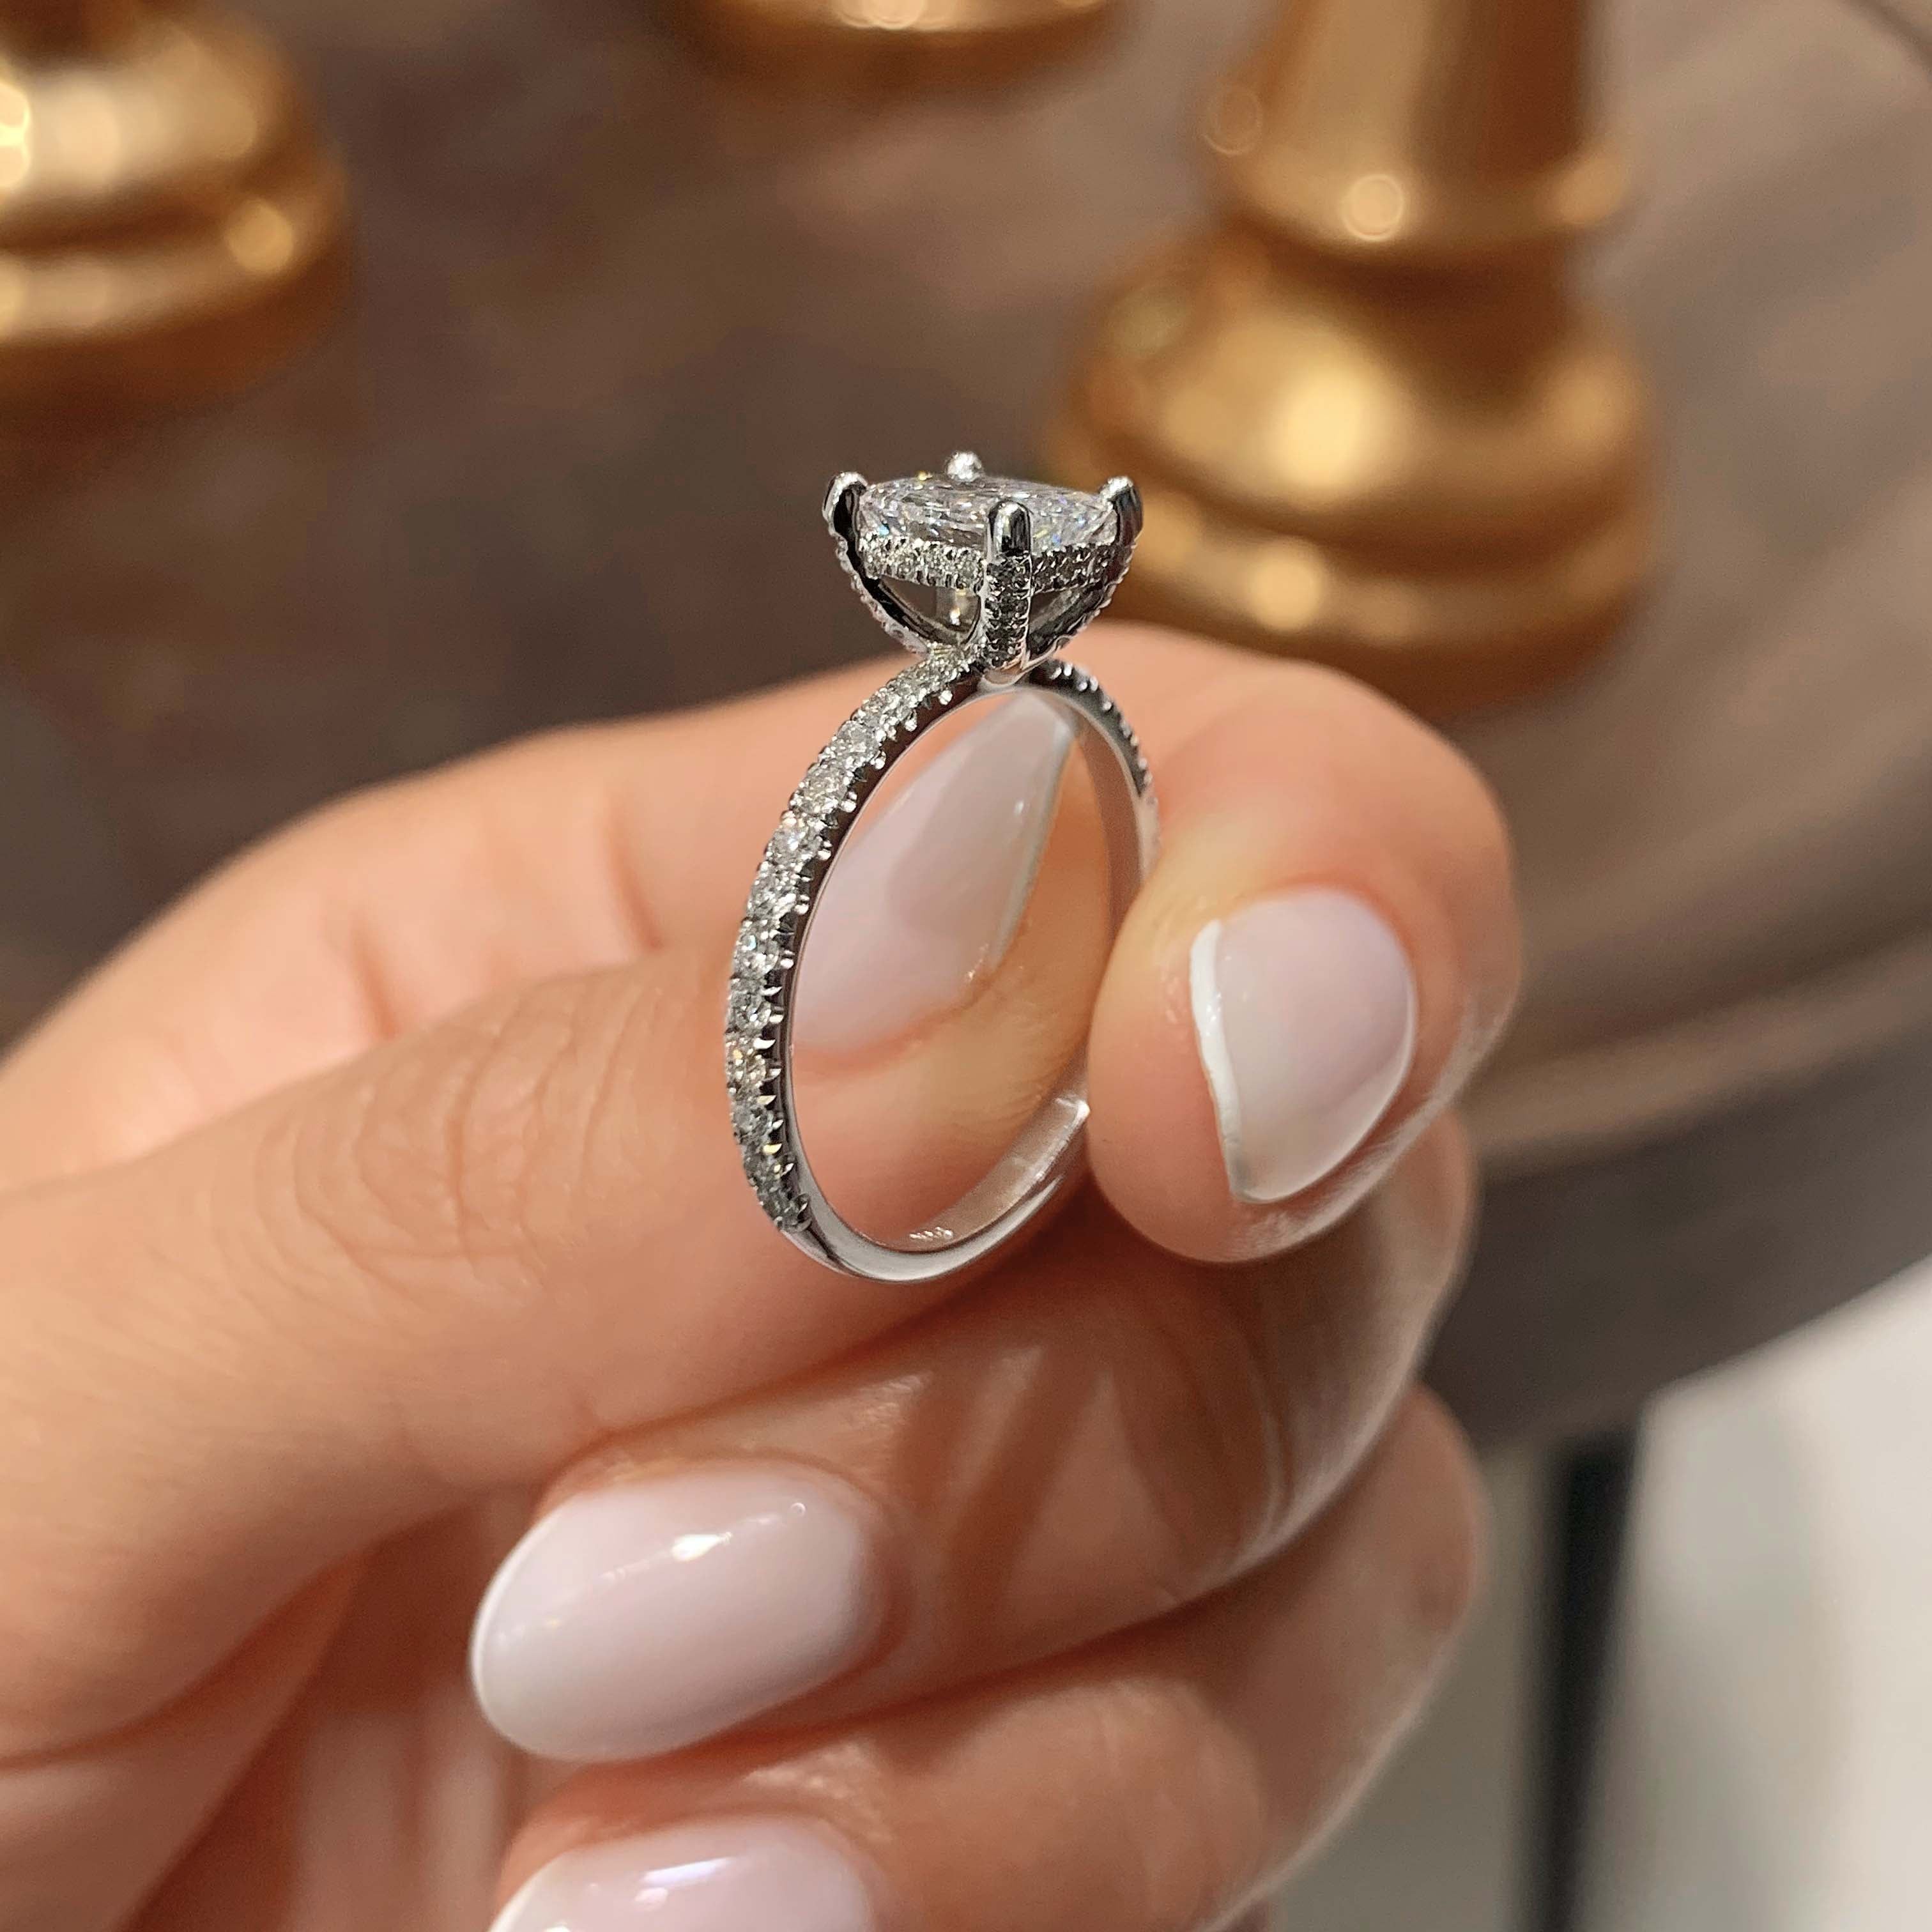 Deborah Moissanite & Diamonds Ring -14K White Gold